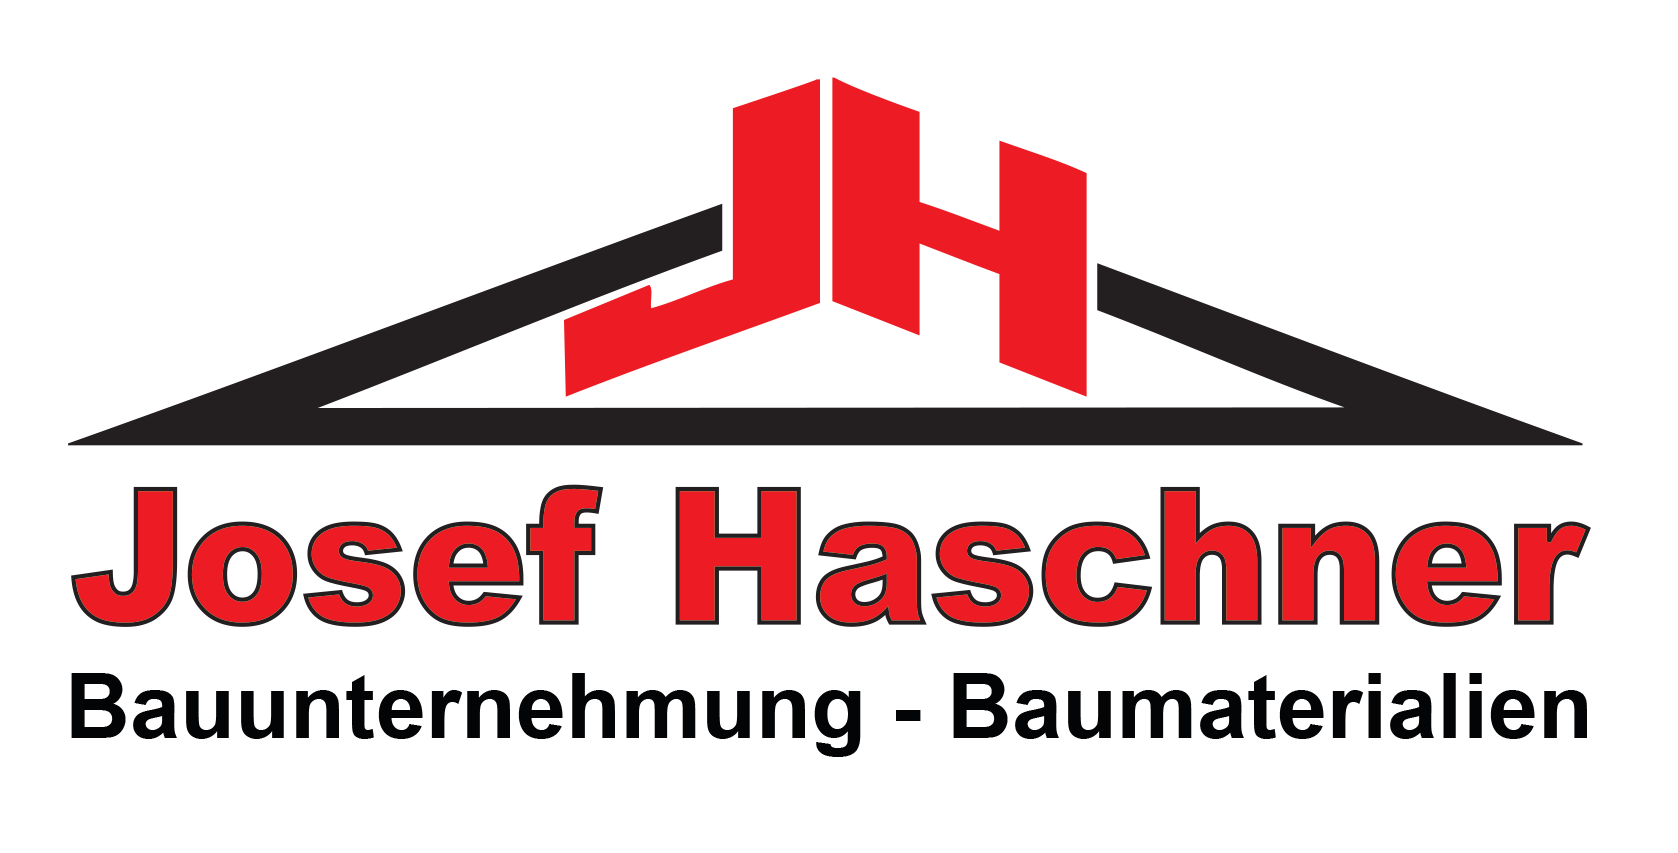 Haschner - Bauunternehmen